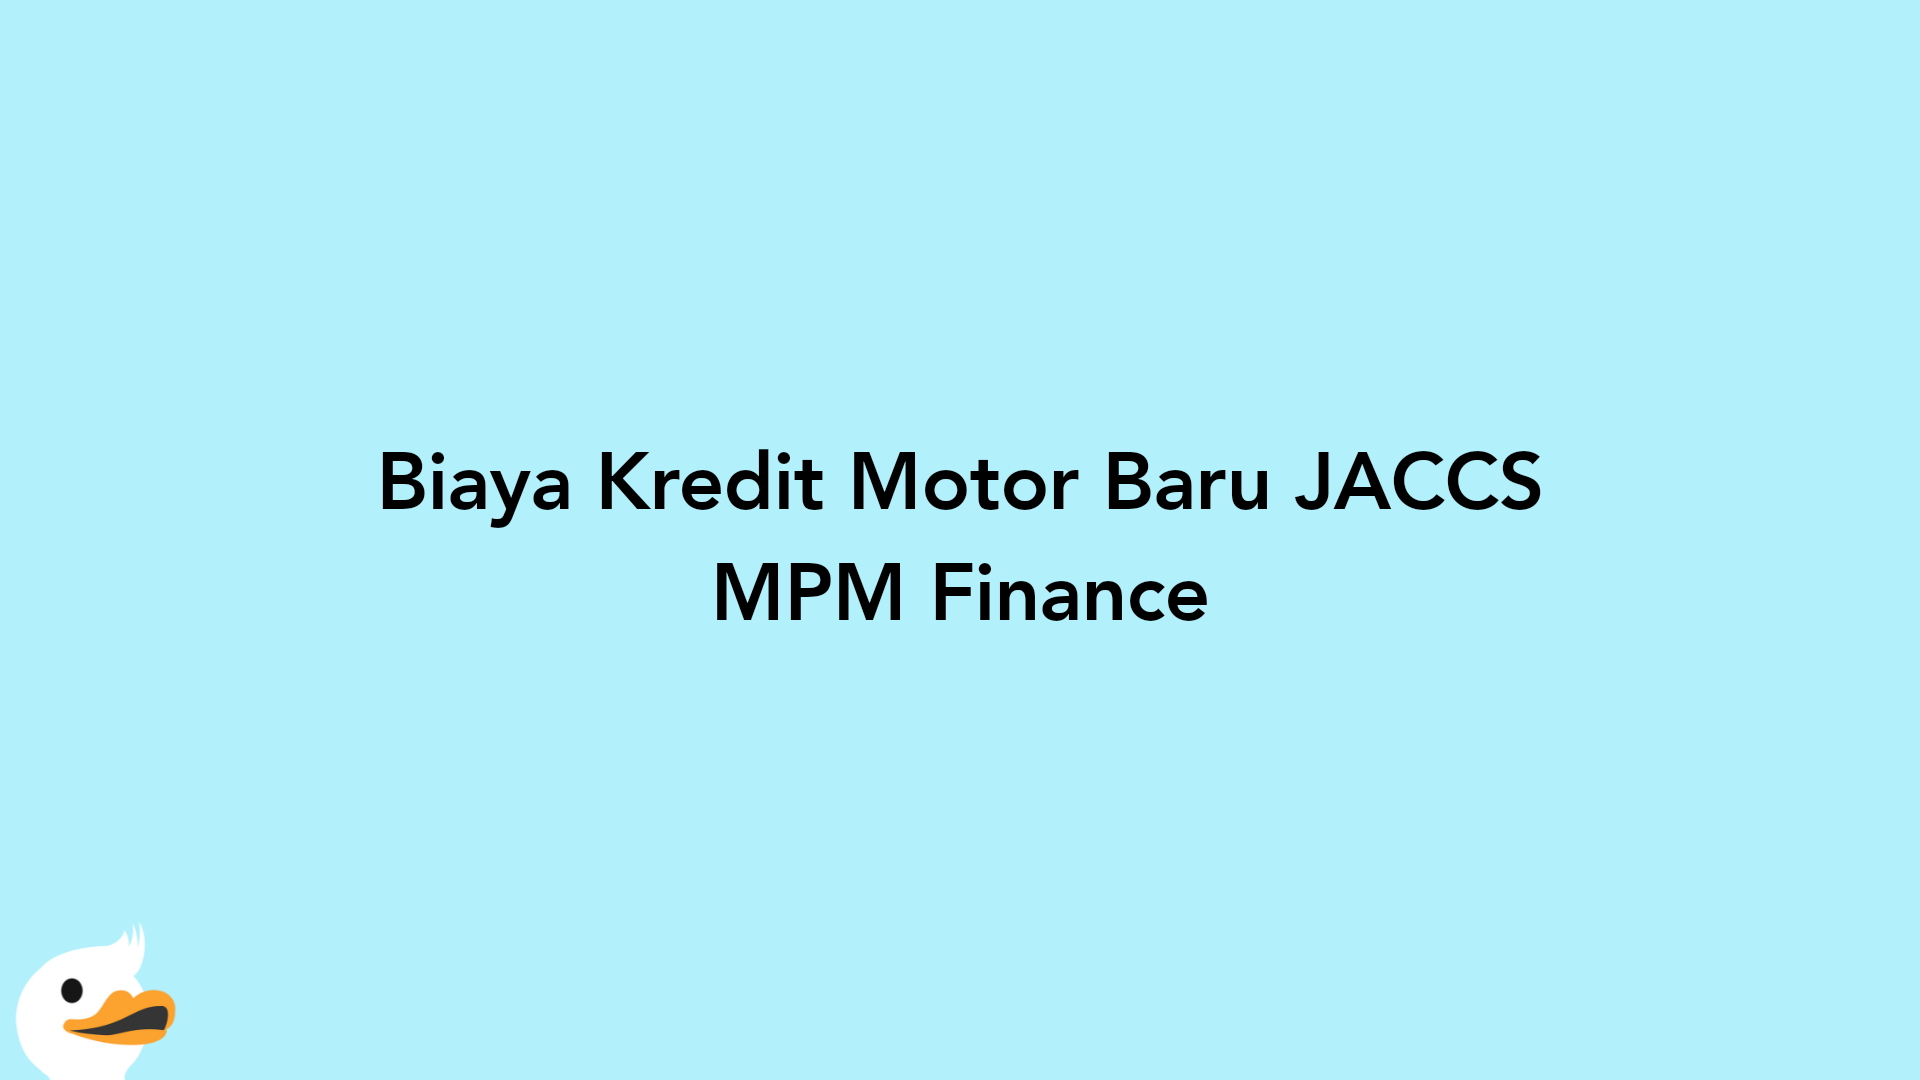 Biaya Kredit Motor Baru JACCS MPM Finance